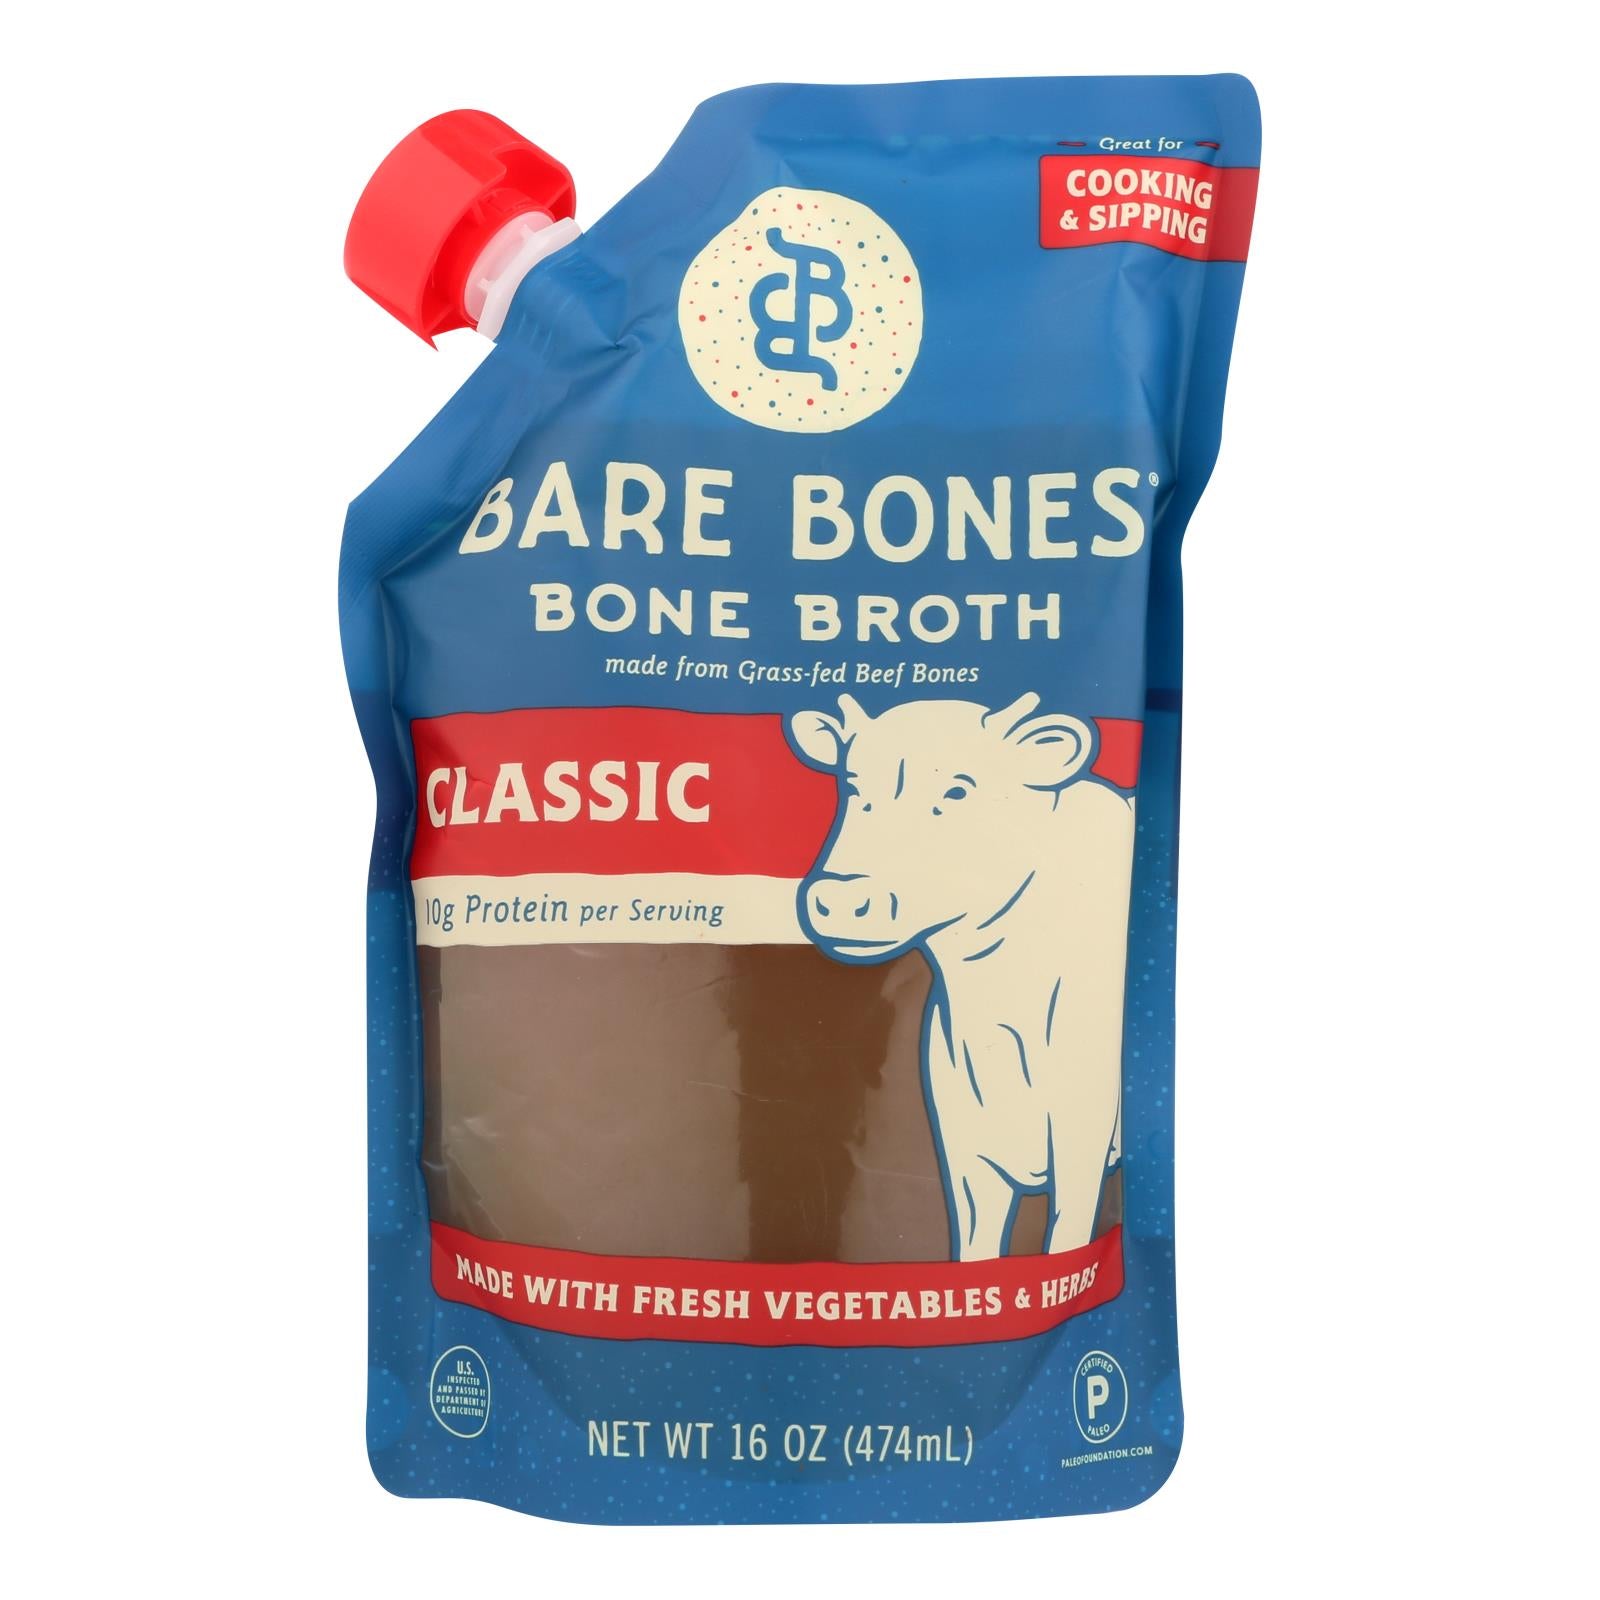 Bare Bones Broth, Bare Bones Classic Bone Broth  - Case of 6 - 16 FZ (Pack of 6)